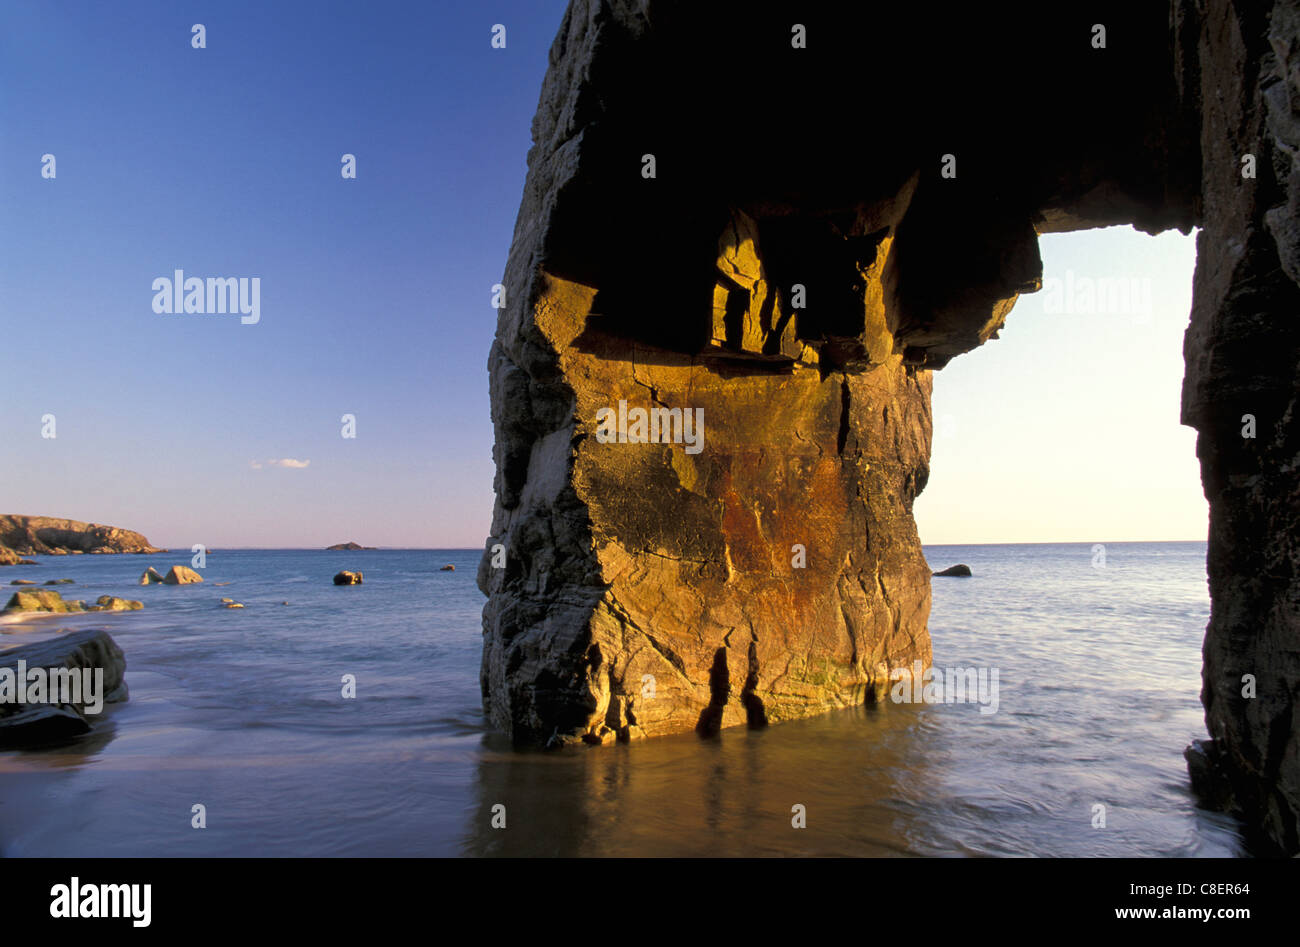 Rock Arch, L'Arch, Cote Sauvage, Presqu'ile de Quiberon, Brittany, Bretagne, France, Europe, sea Stock Photo